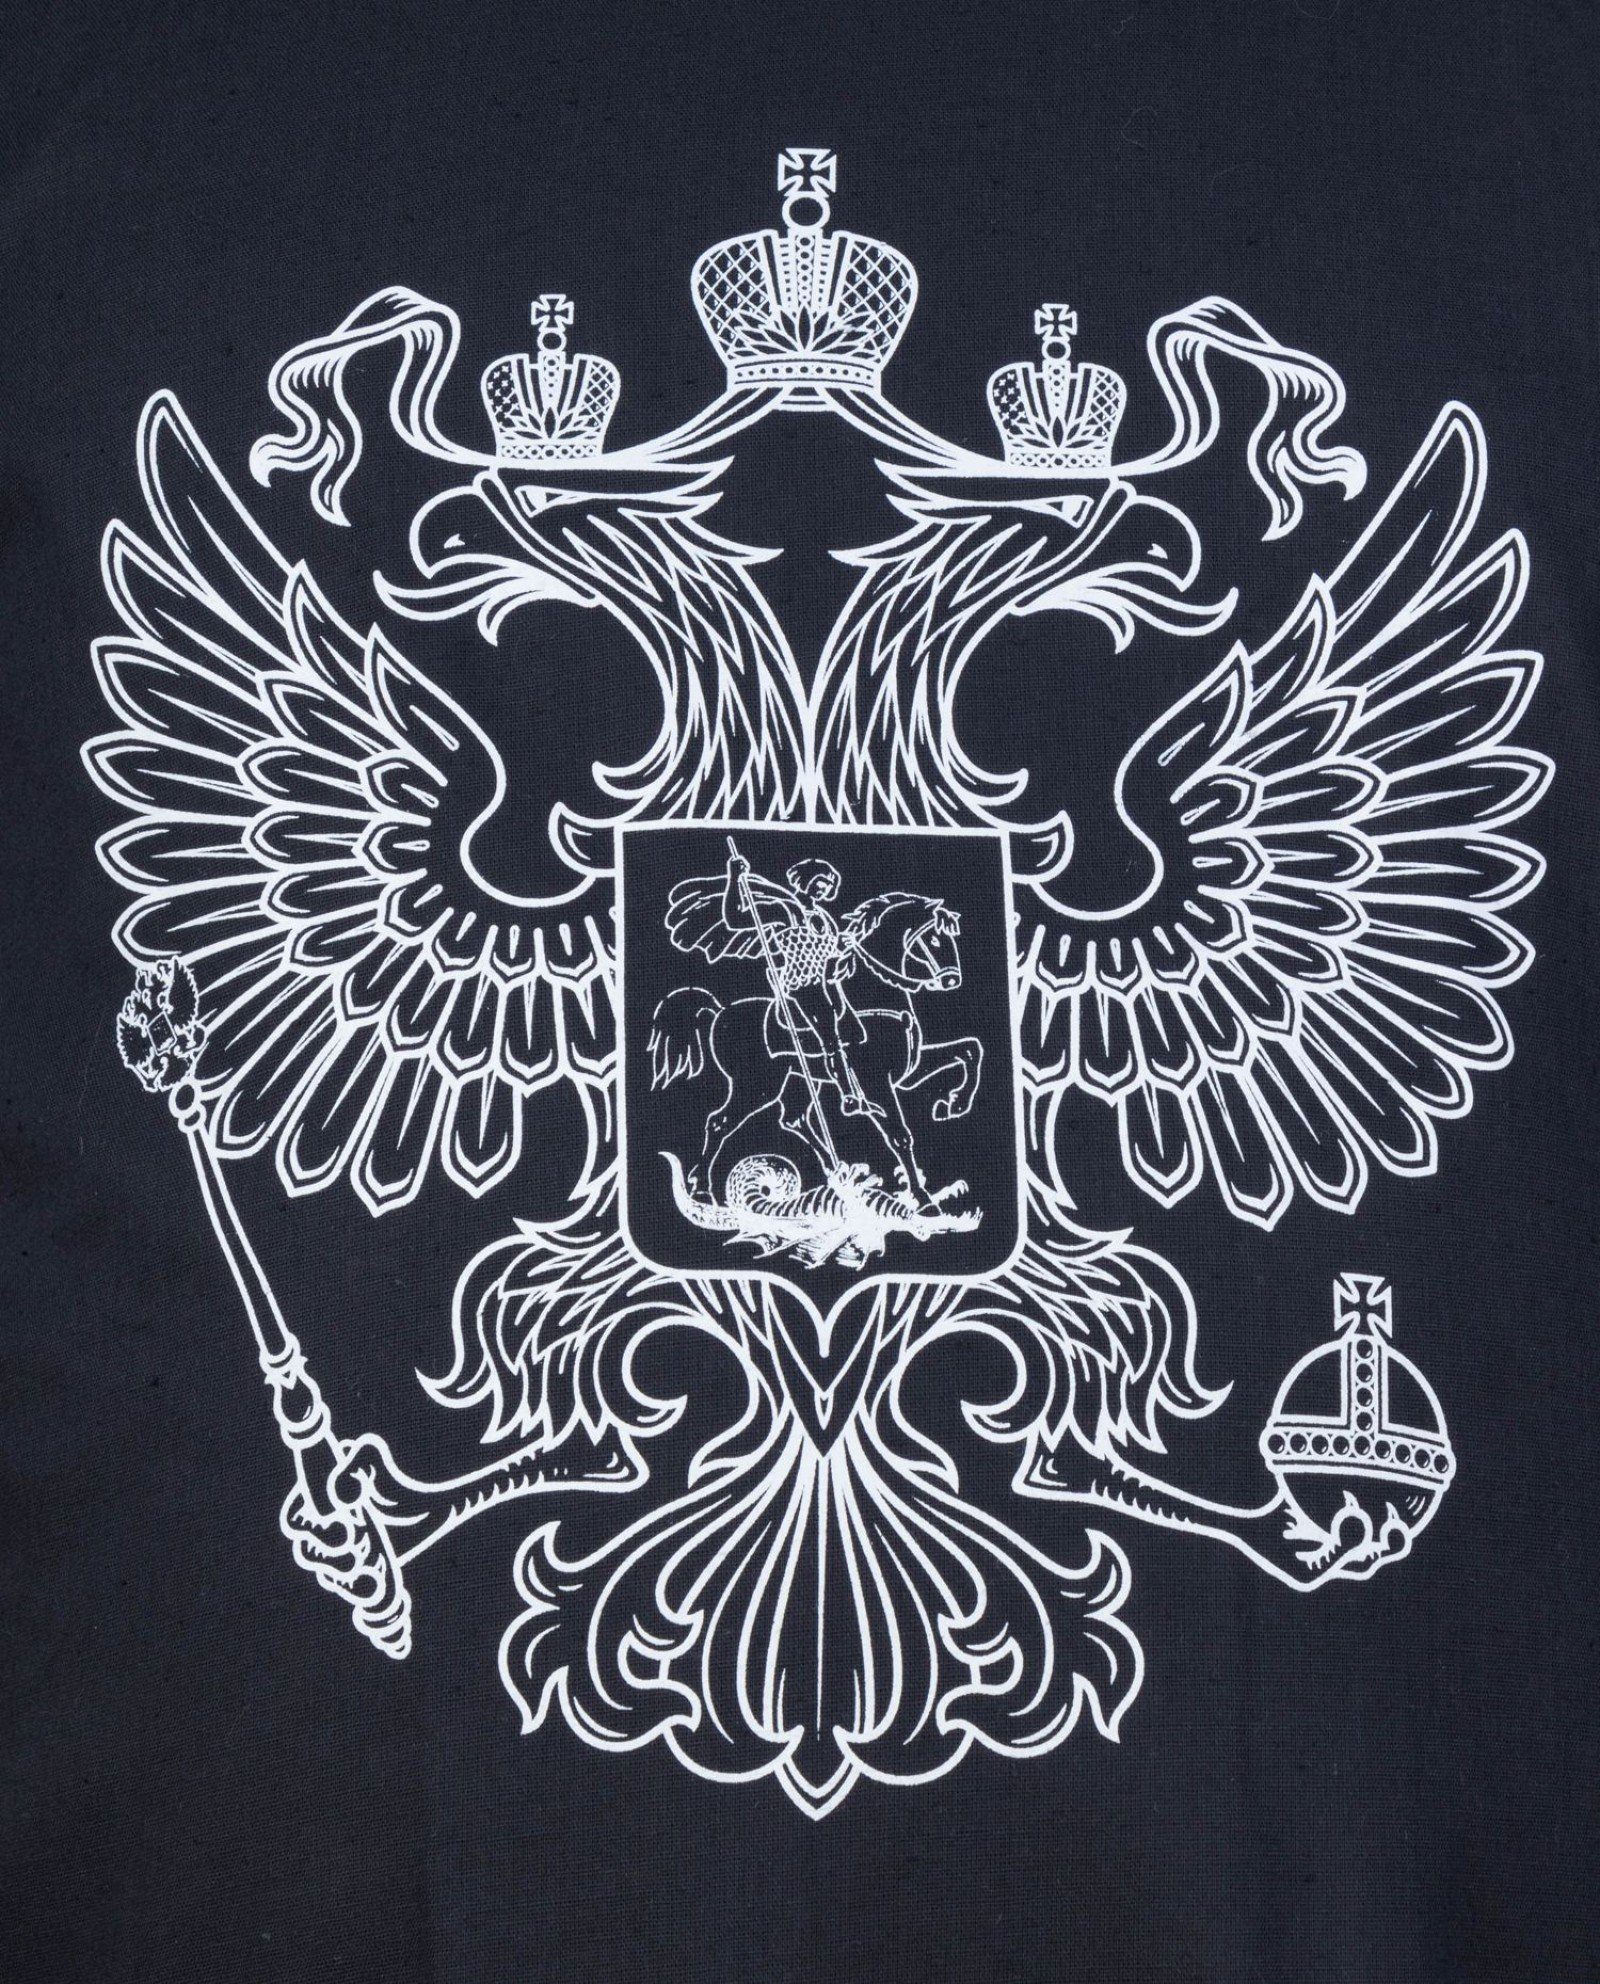 картинки на телефон российский герб